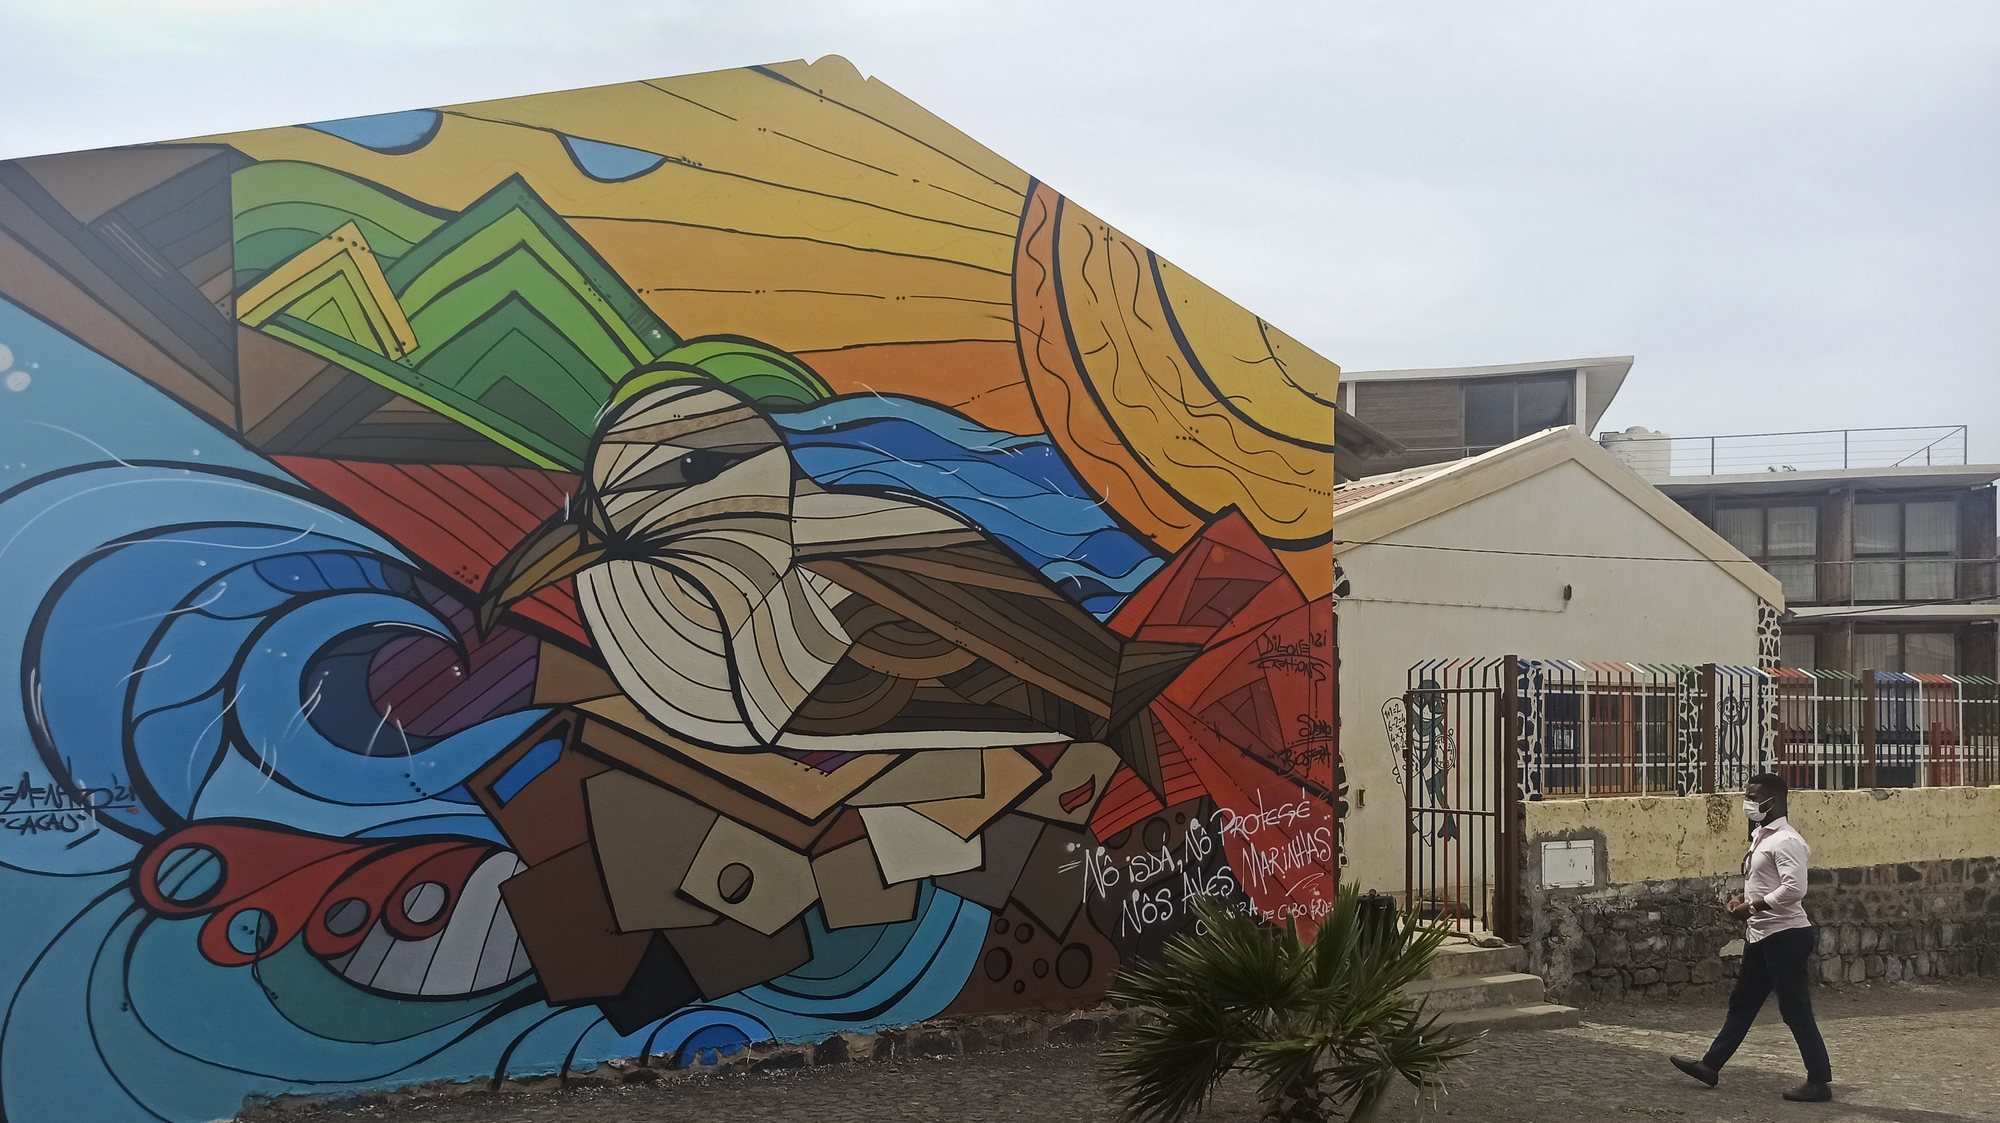 A associação ambientalista Biosfera Cabo Verde começou a pintar murais nas escolas da ilha de São Vicente para sensibilizar as crianças e as comunidades para a proteção das espécies marinhas, recriadas nestas verdadeiras obras de arte. Mindelo 11 de setembro de 2021. (ACOMPANHA TEXTO DO DIA 13 SETEMBRO 2021) SIDNEIA NEWTON / LUSA